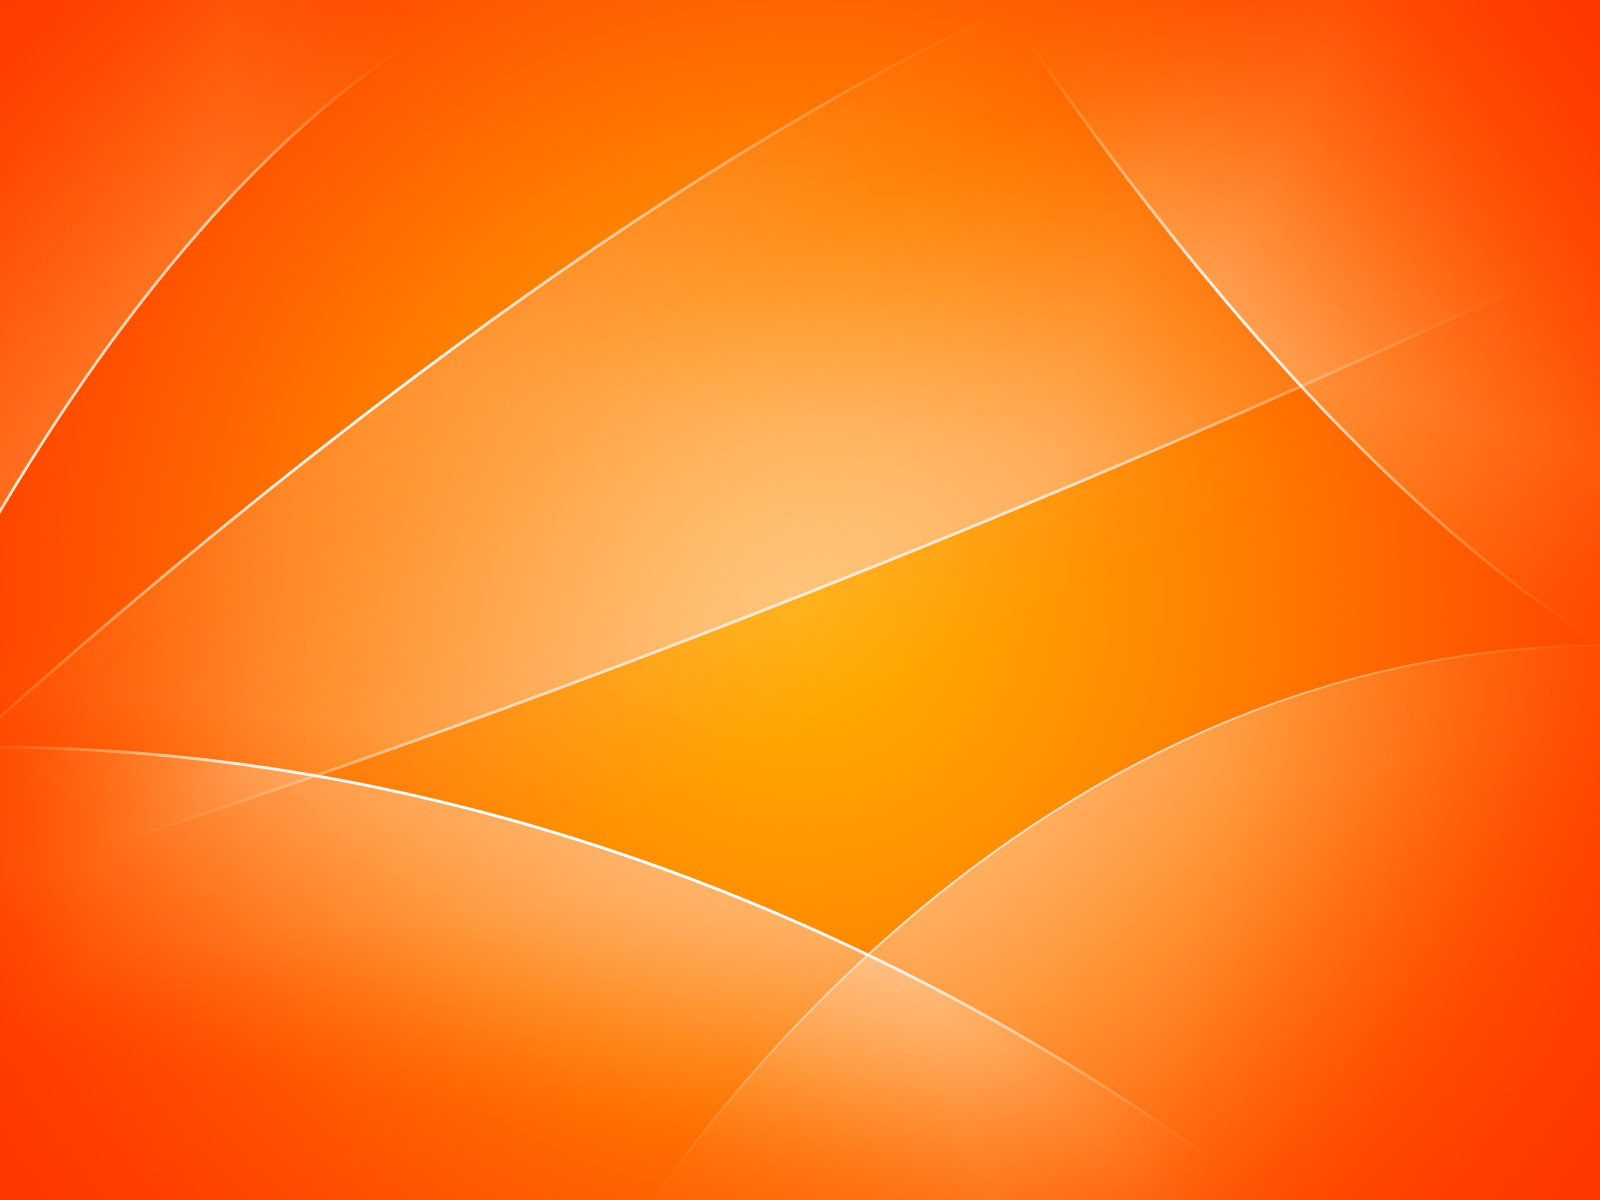 http://4.bp.blogspot.com/-VbwG8YshEFA/TlczT0sYU1I/AAAAAAAAEYs/b0XUa7jJYok/s1600/Orange_abstract_wallpaper.jpg